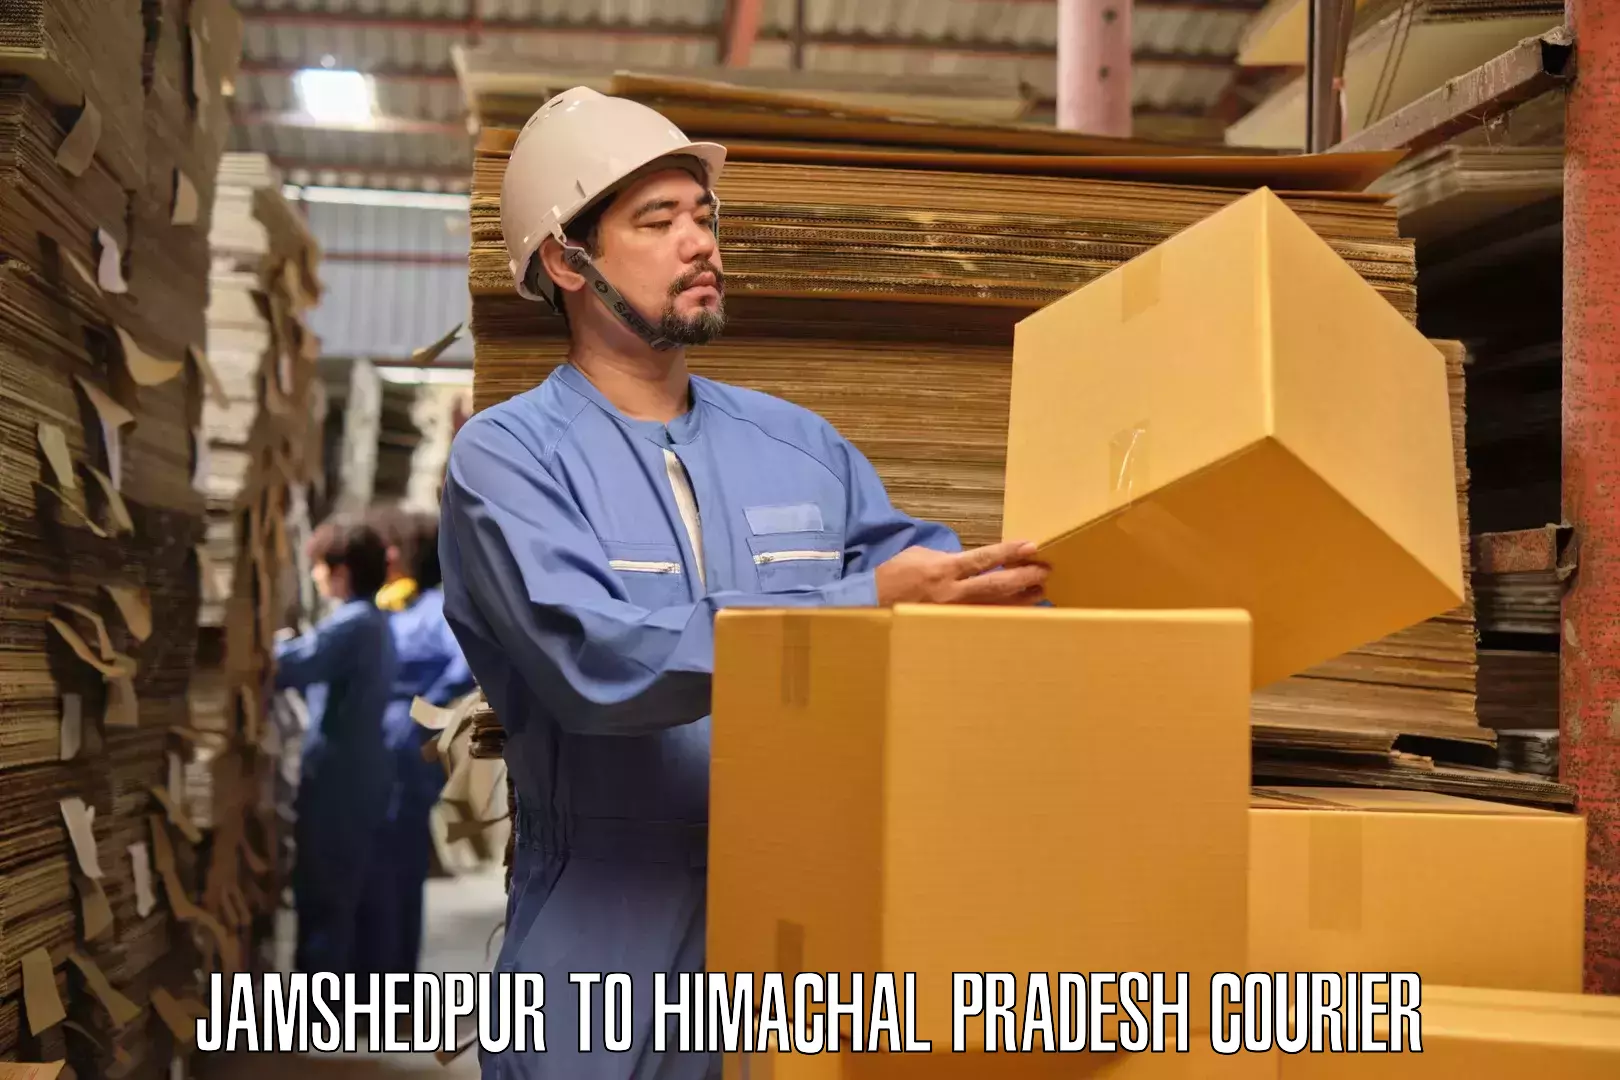 Furniture delivery service Jamshedpur to Kinnaur